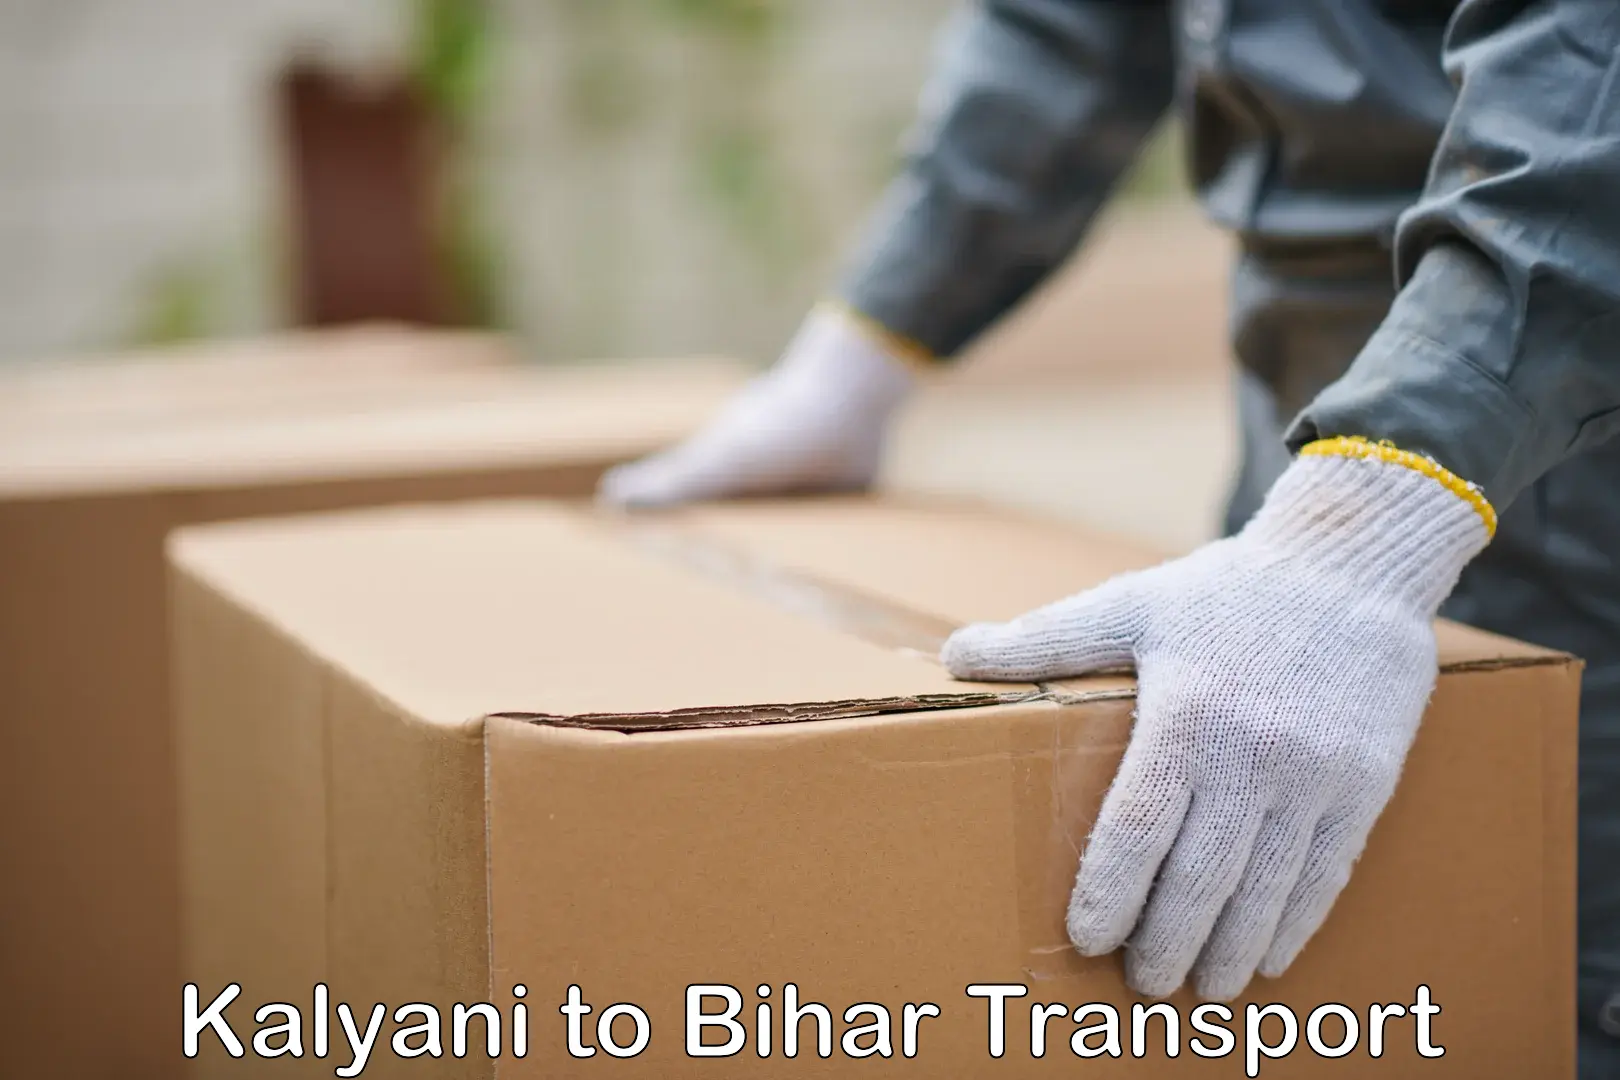 Daily parcel service transport Kalyani to Khodaganj